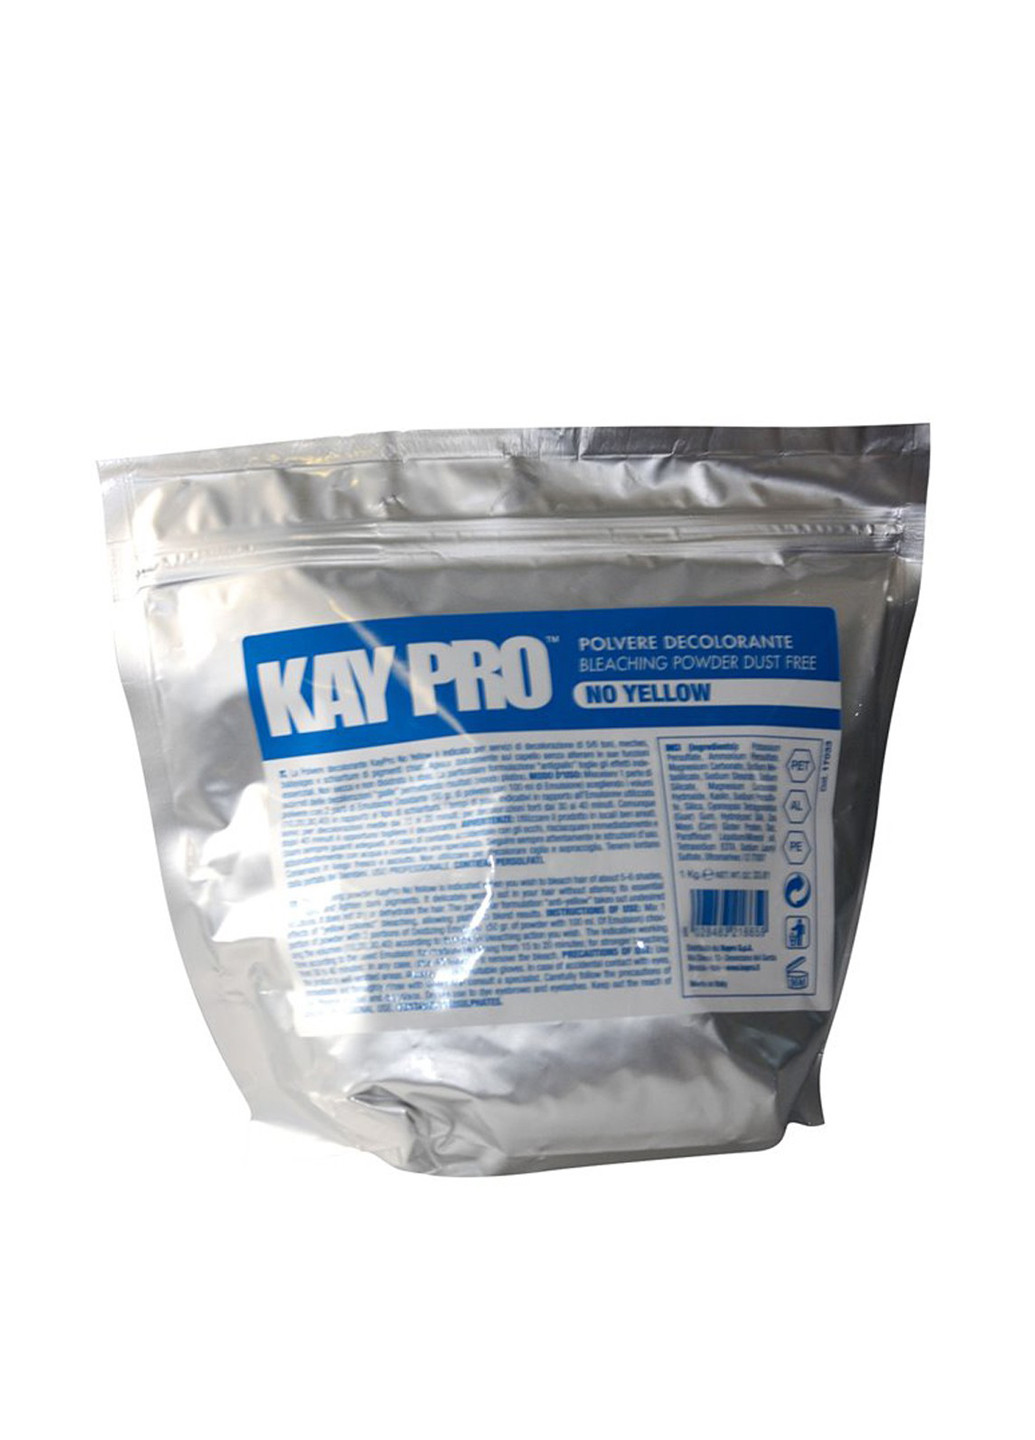 Обесцвечивающий порошок для волос No Yellow Bleaching Powder Dust Free, 1000 г KayPro (75296396)